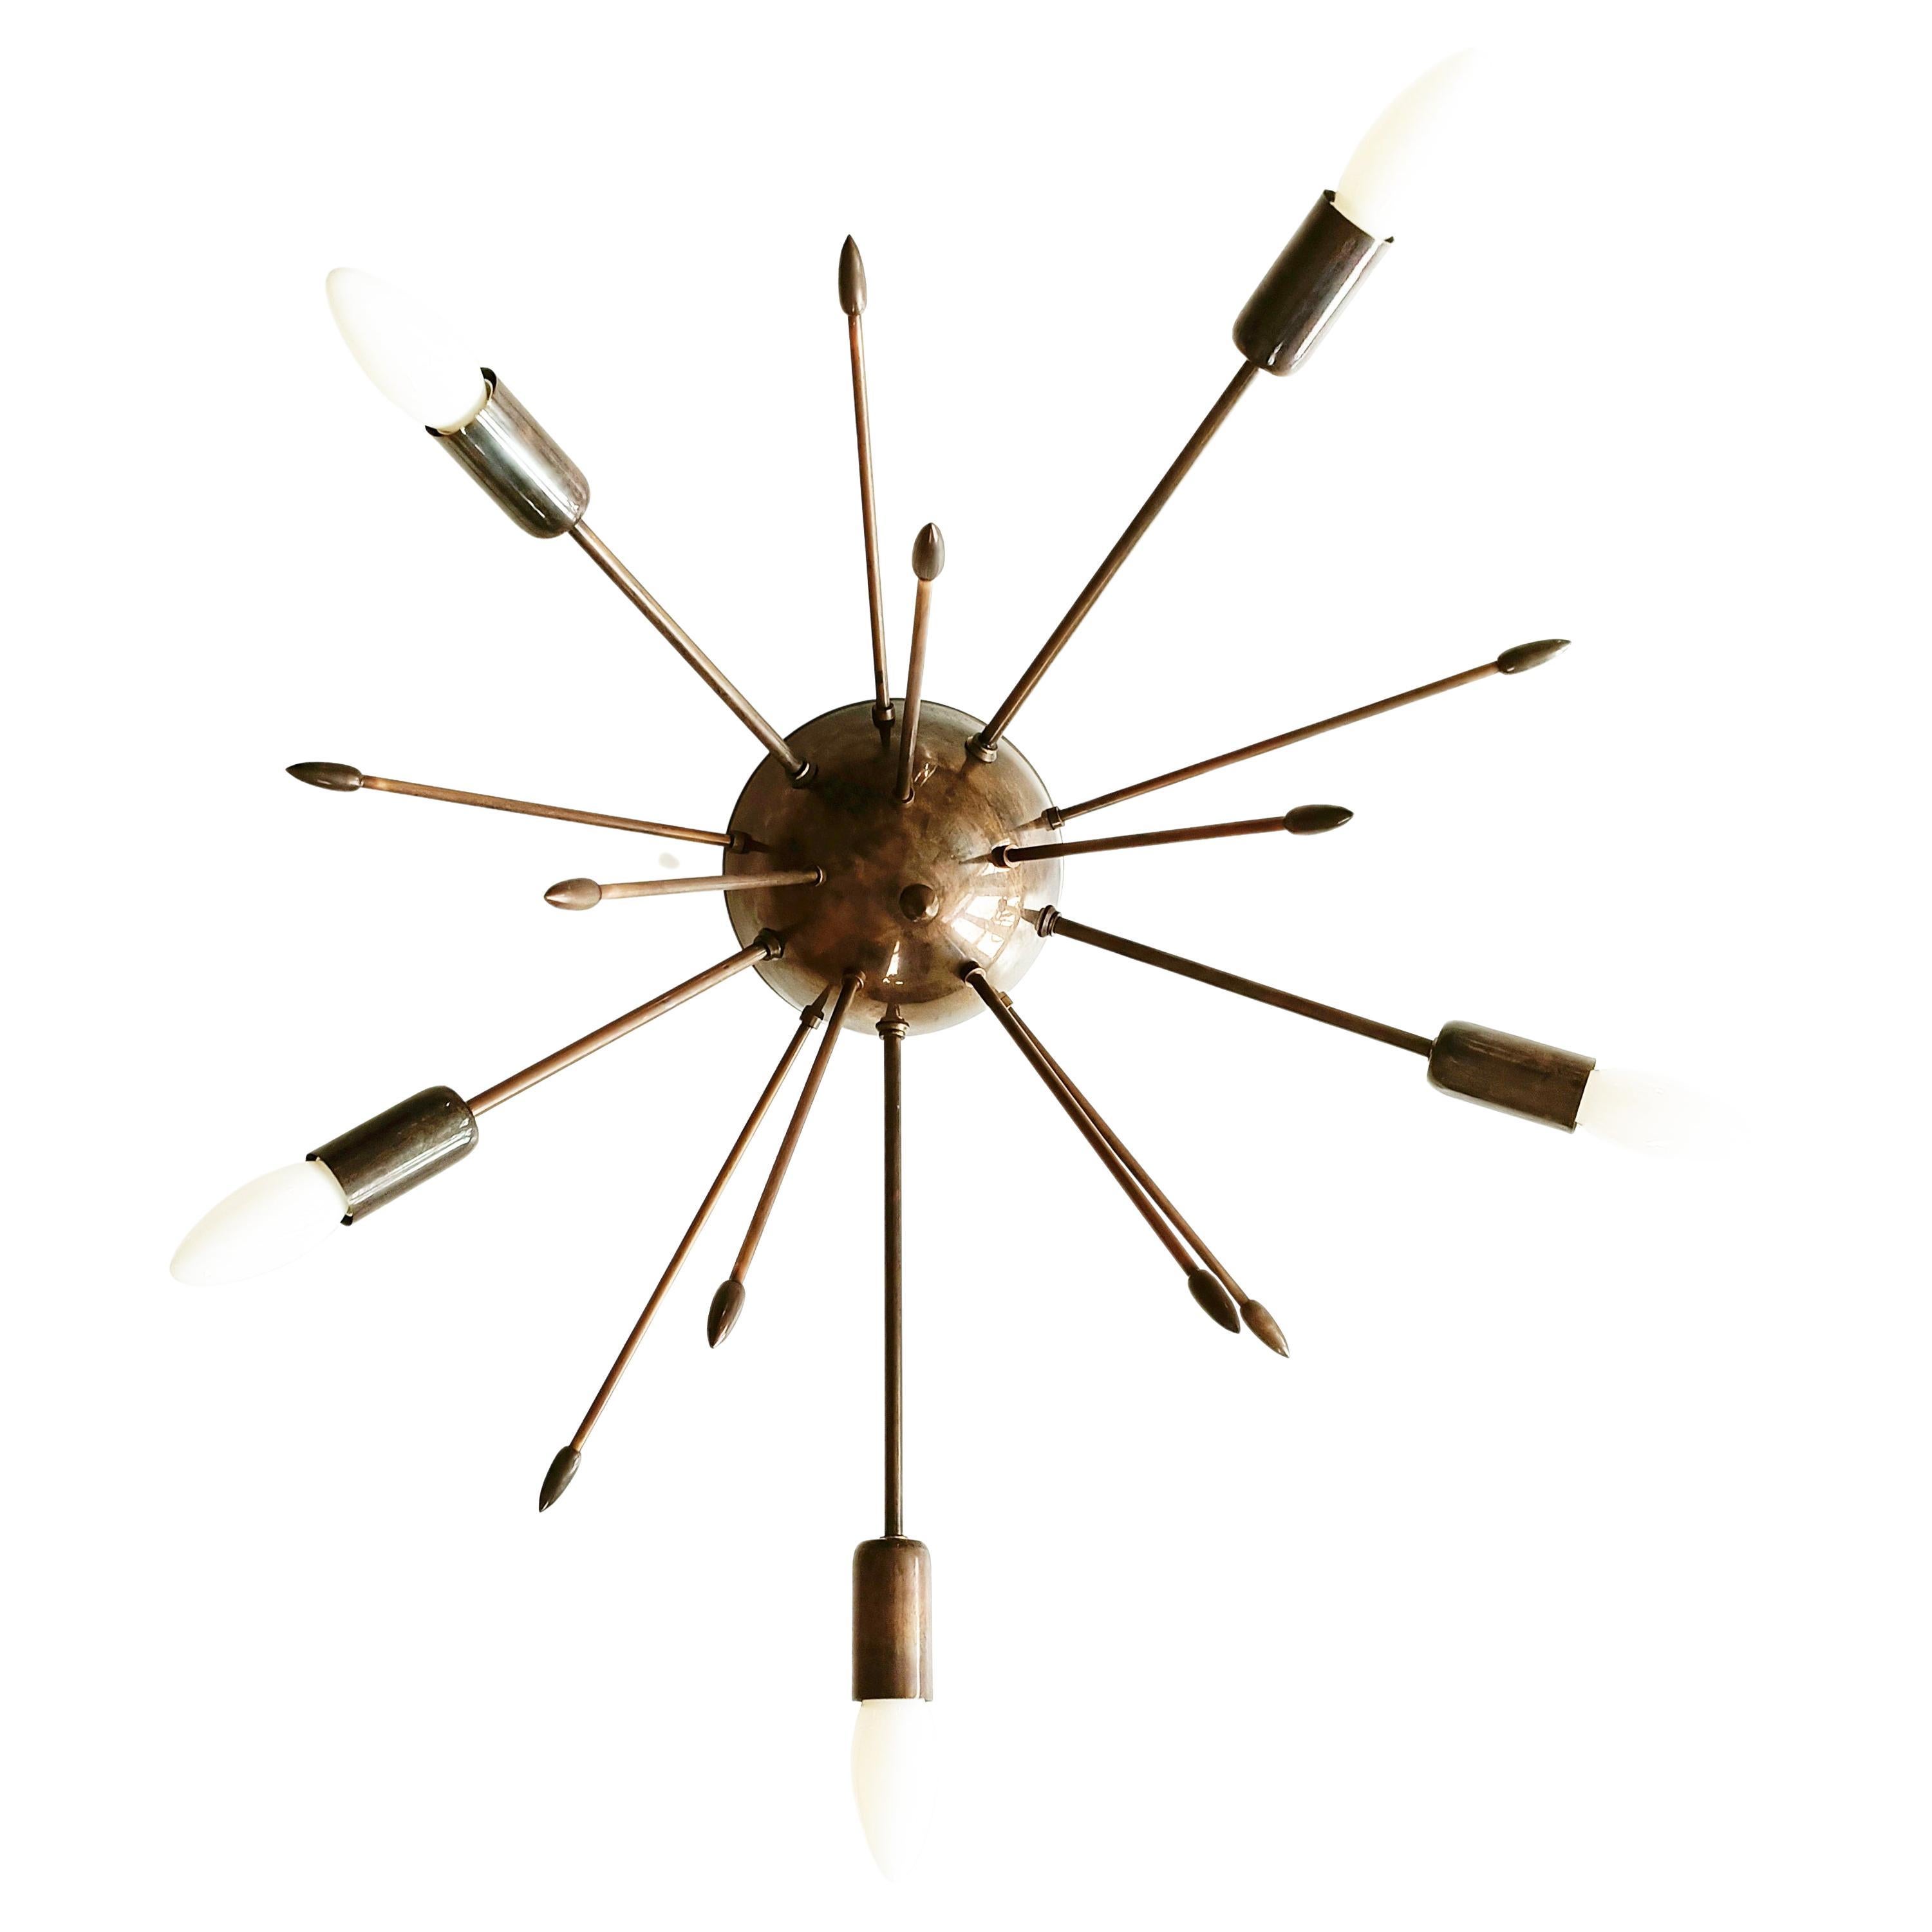 Hergestellt aus Messing. Schöne dunkle Bronze-Patina.

Beleuchtung: 5 x E14.

Kostenloser Versand.

Entworfen und hergestellt von Candas Design, Kunsthandwerker für Beleuchtungsgeräte.

